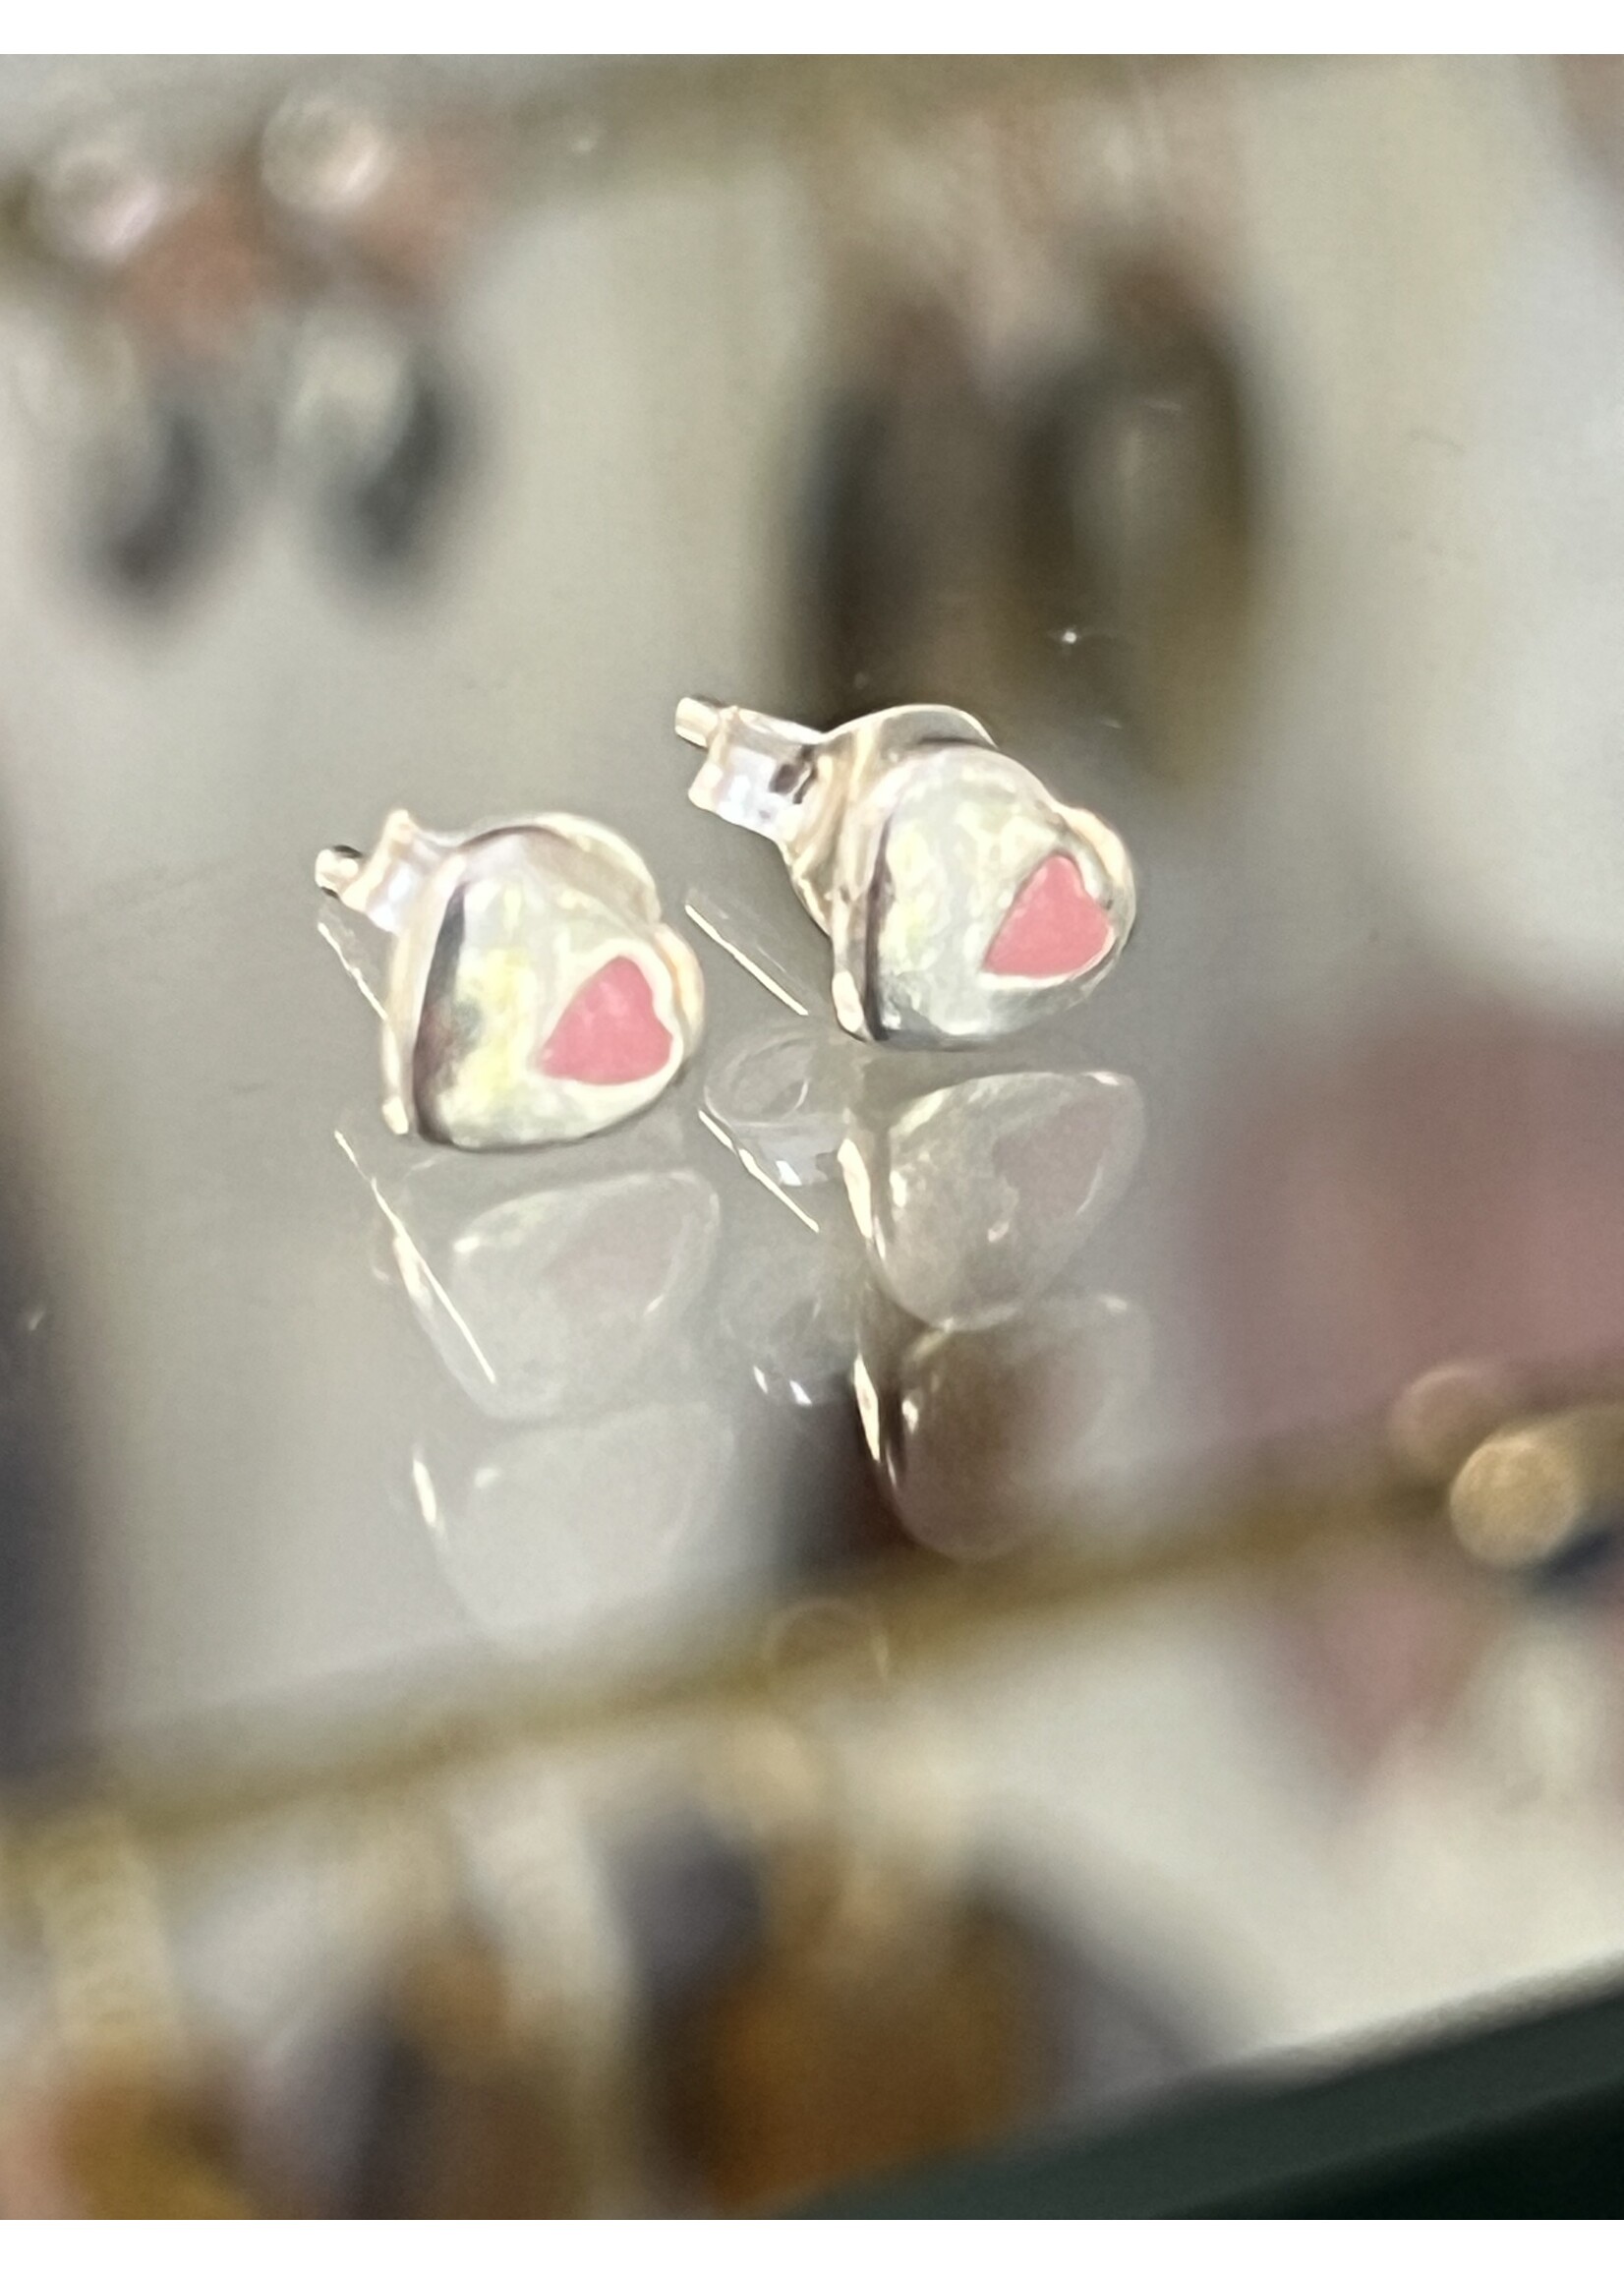 Cataleya jewels Zilveren kleine oorknopjes hart met roze hartje